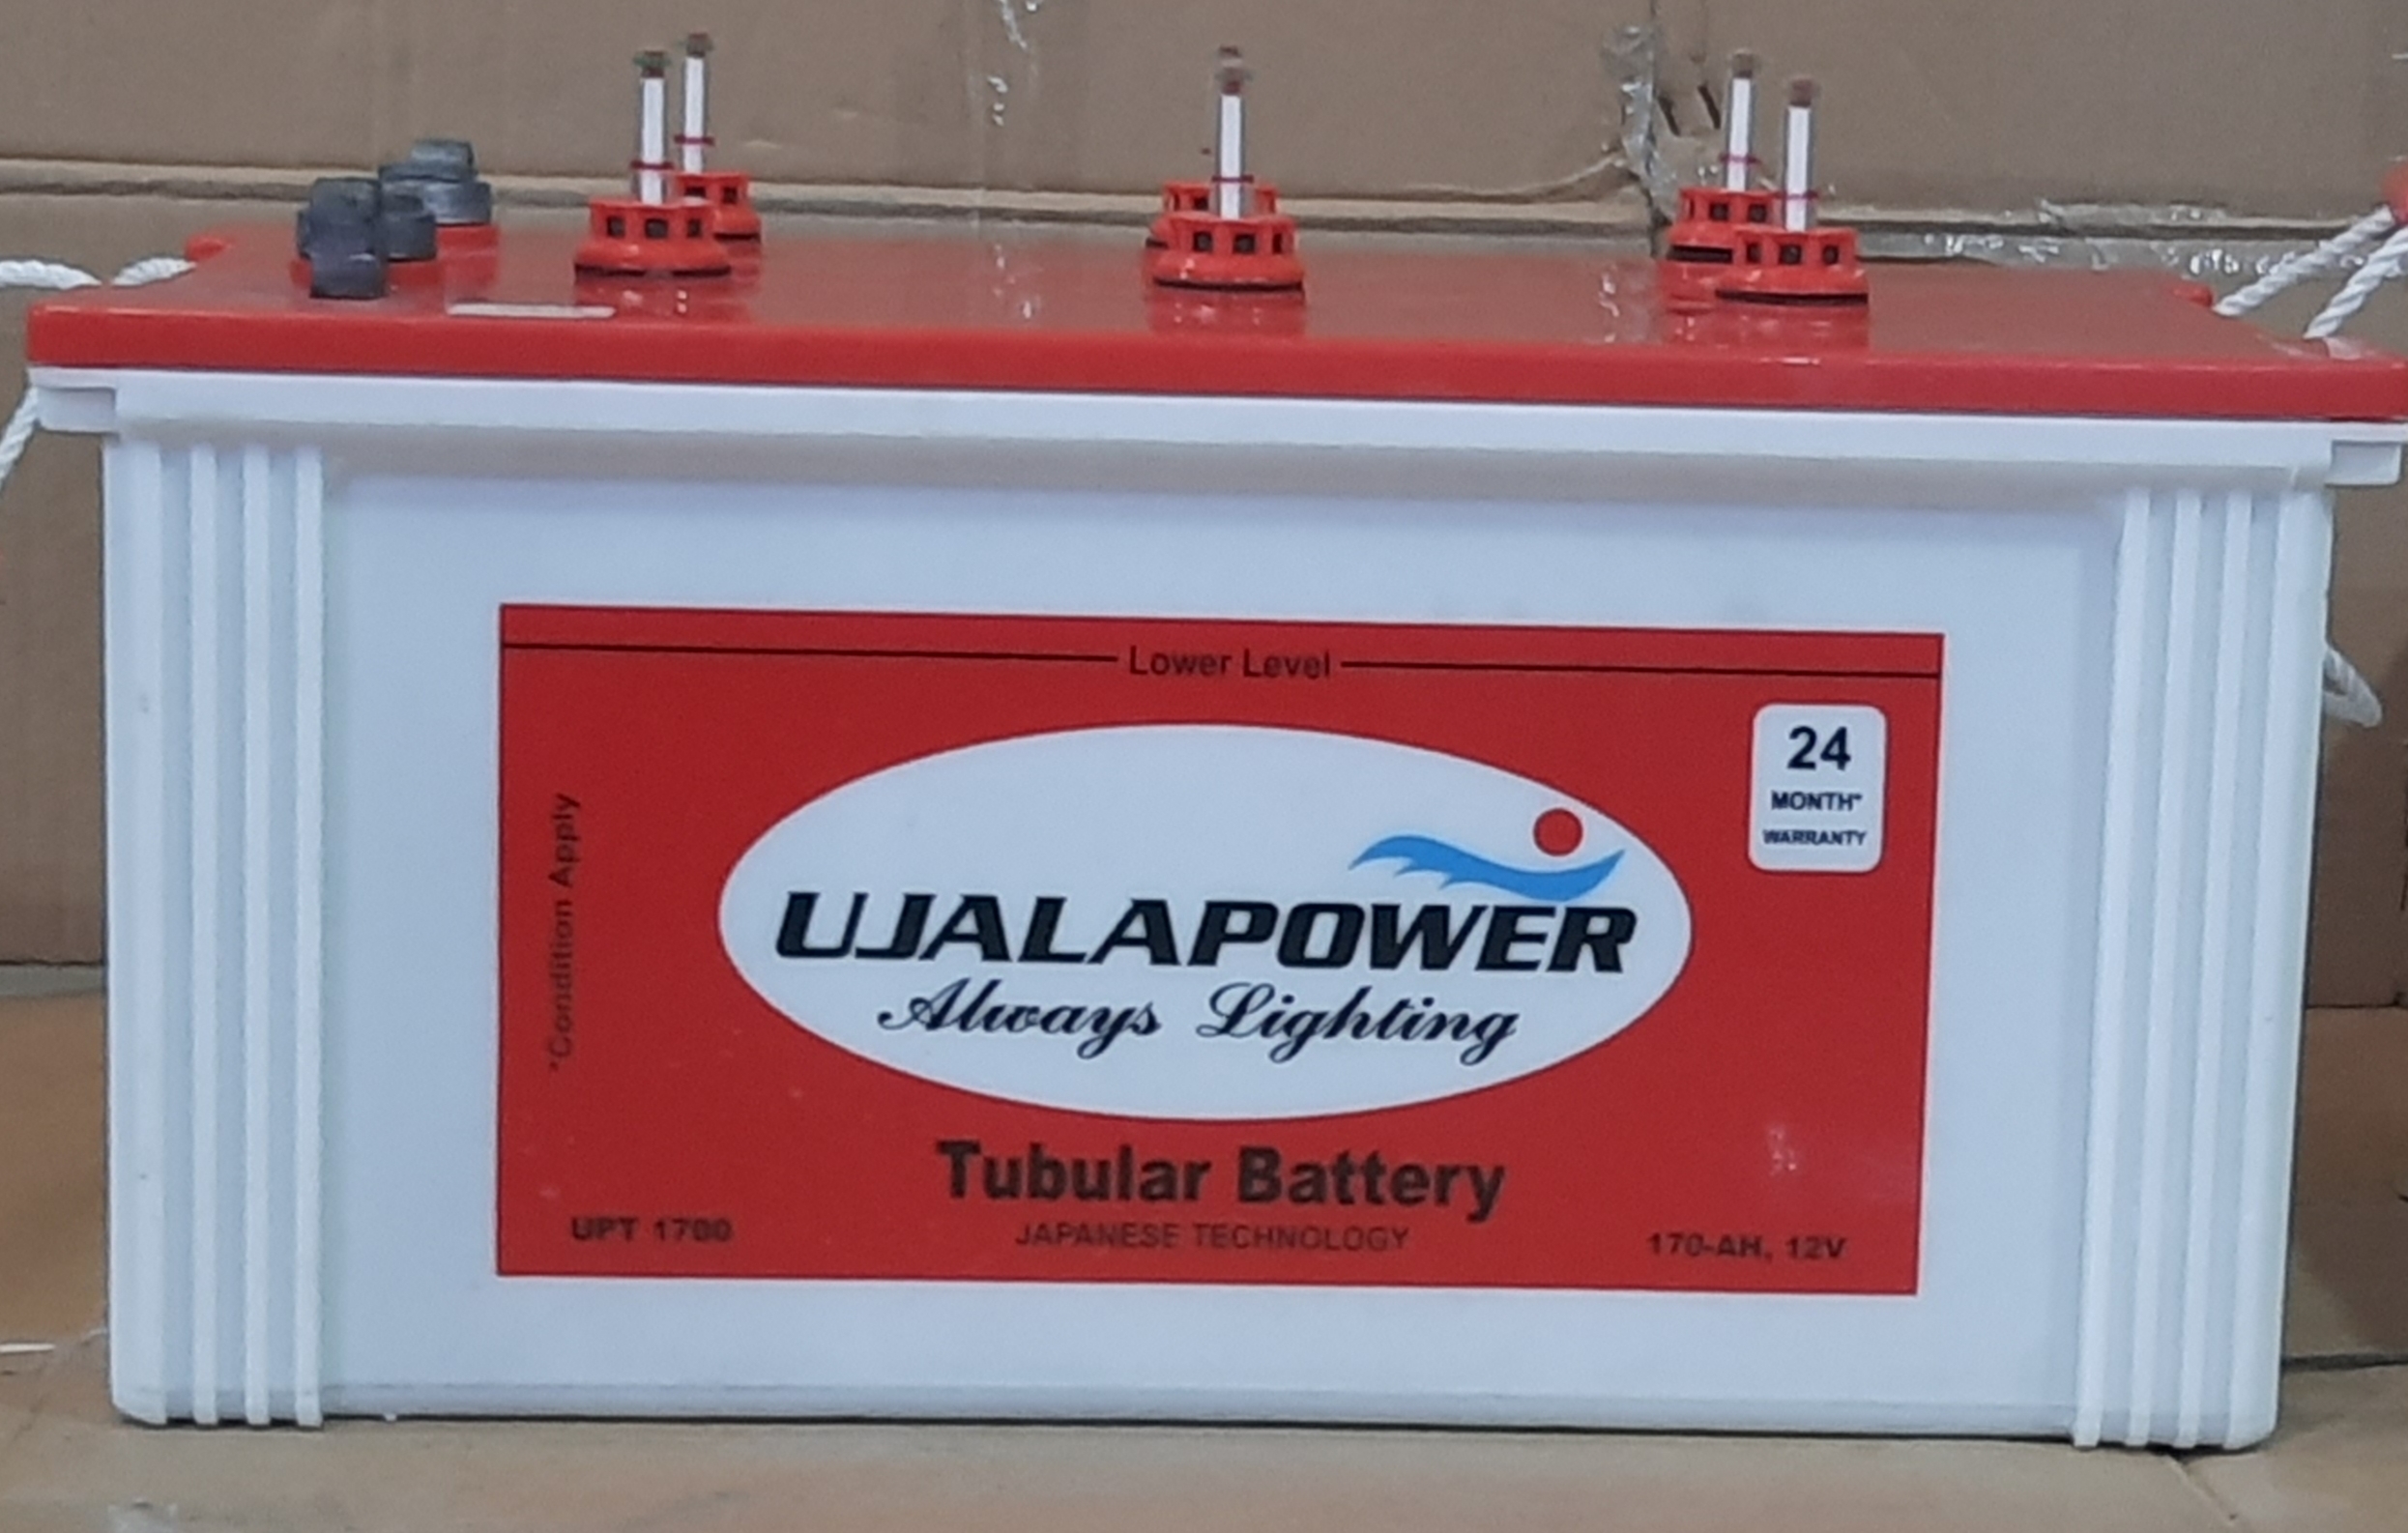 Inverter Batteries